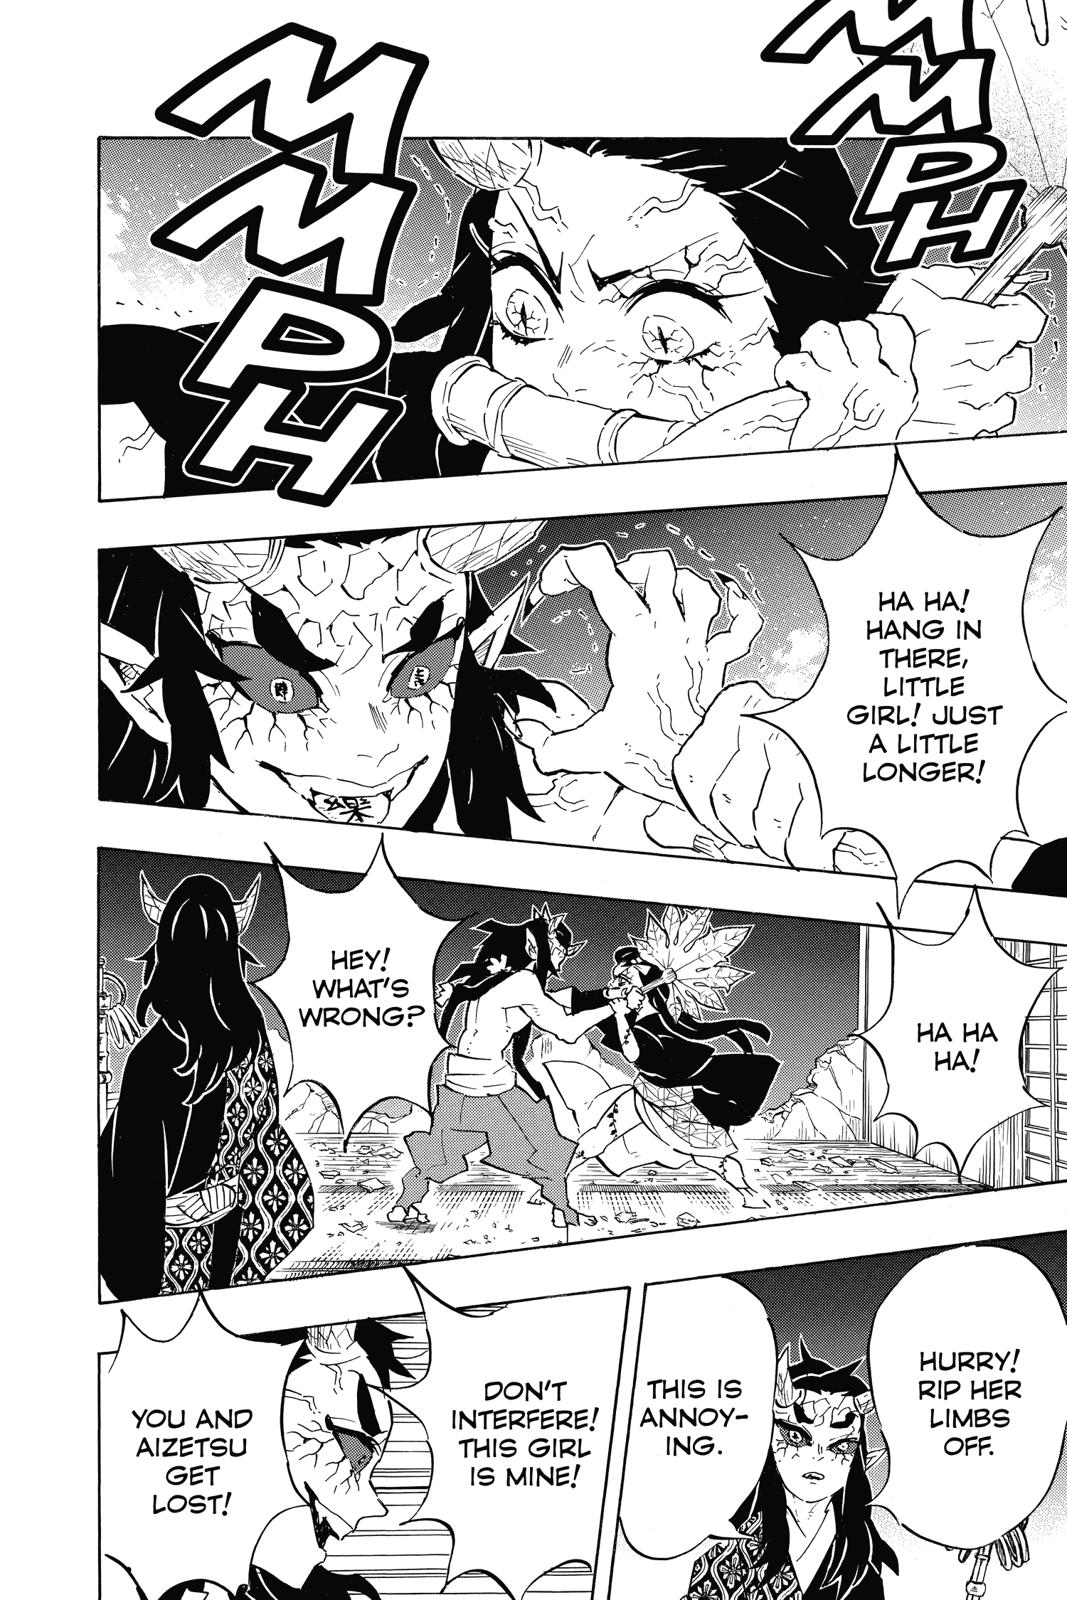 Demon Slayer Manga Manga Chapter - 108 - image 13